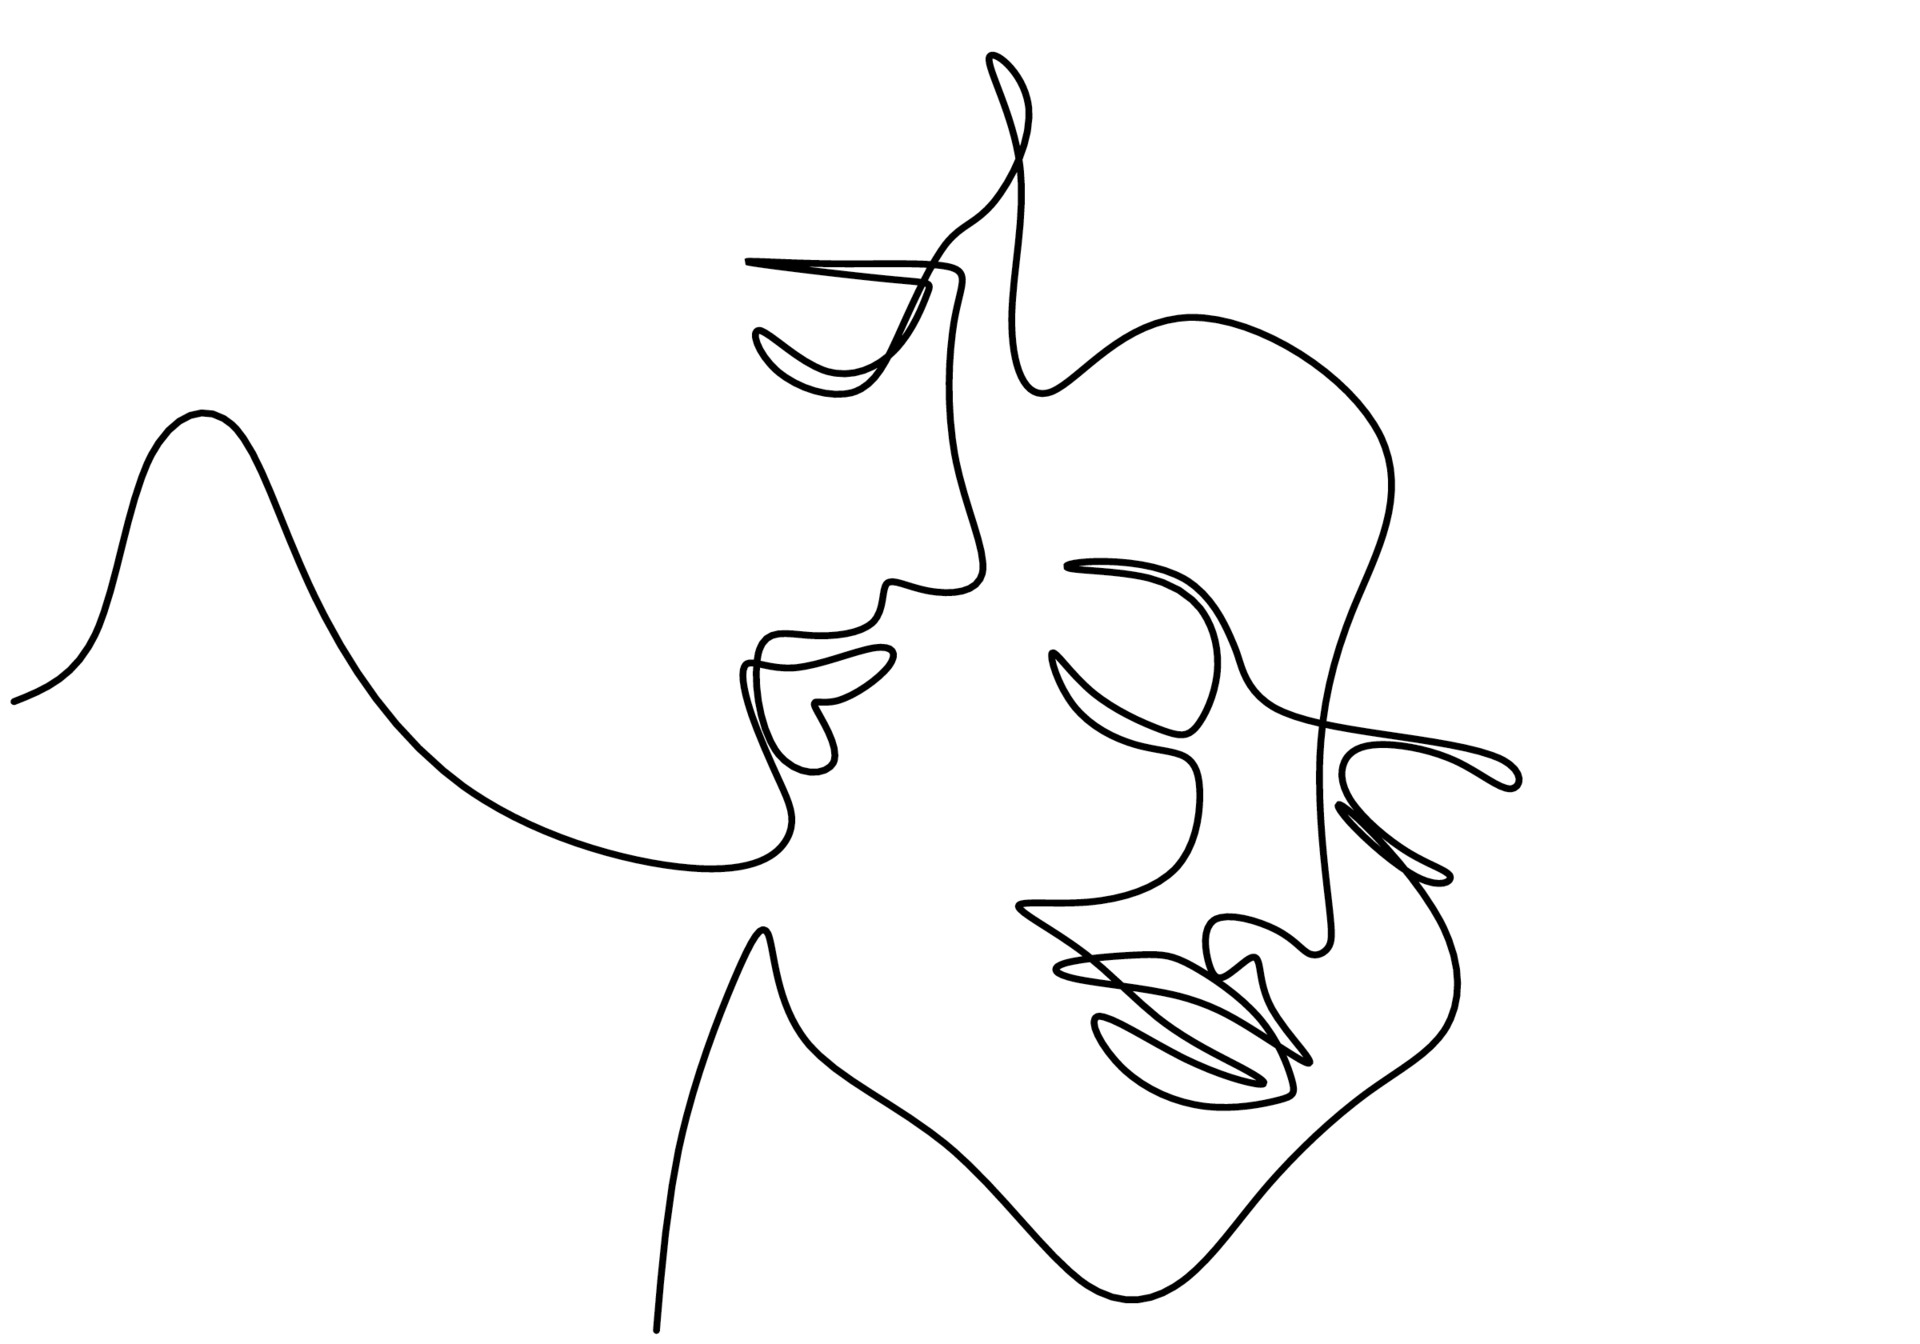 pareja amorosa está conectada por un dibujo de línea. símbolo de amor,  familia y unidad. hombre y mujer enamorados aislados sobre fondo blanco.  concepto de día de san valentín estilo minimalista. ilustración